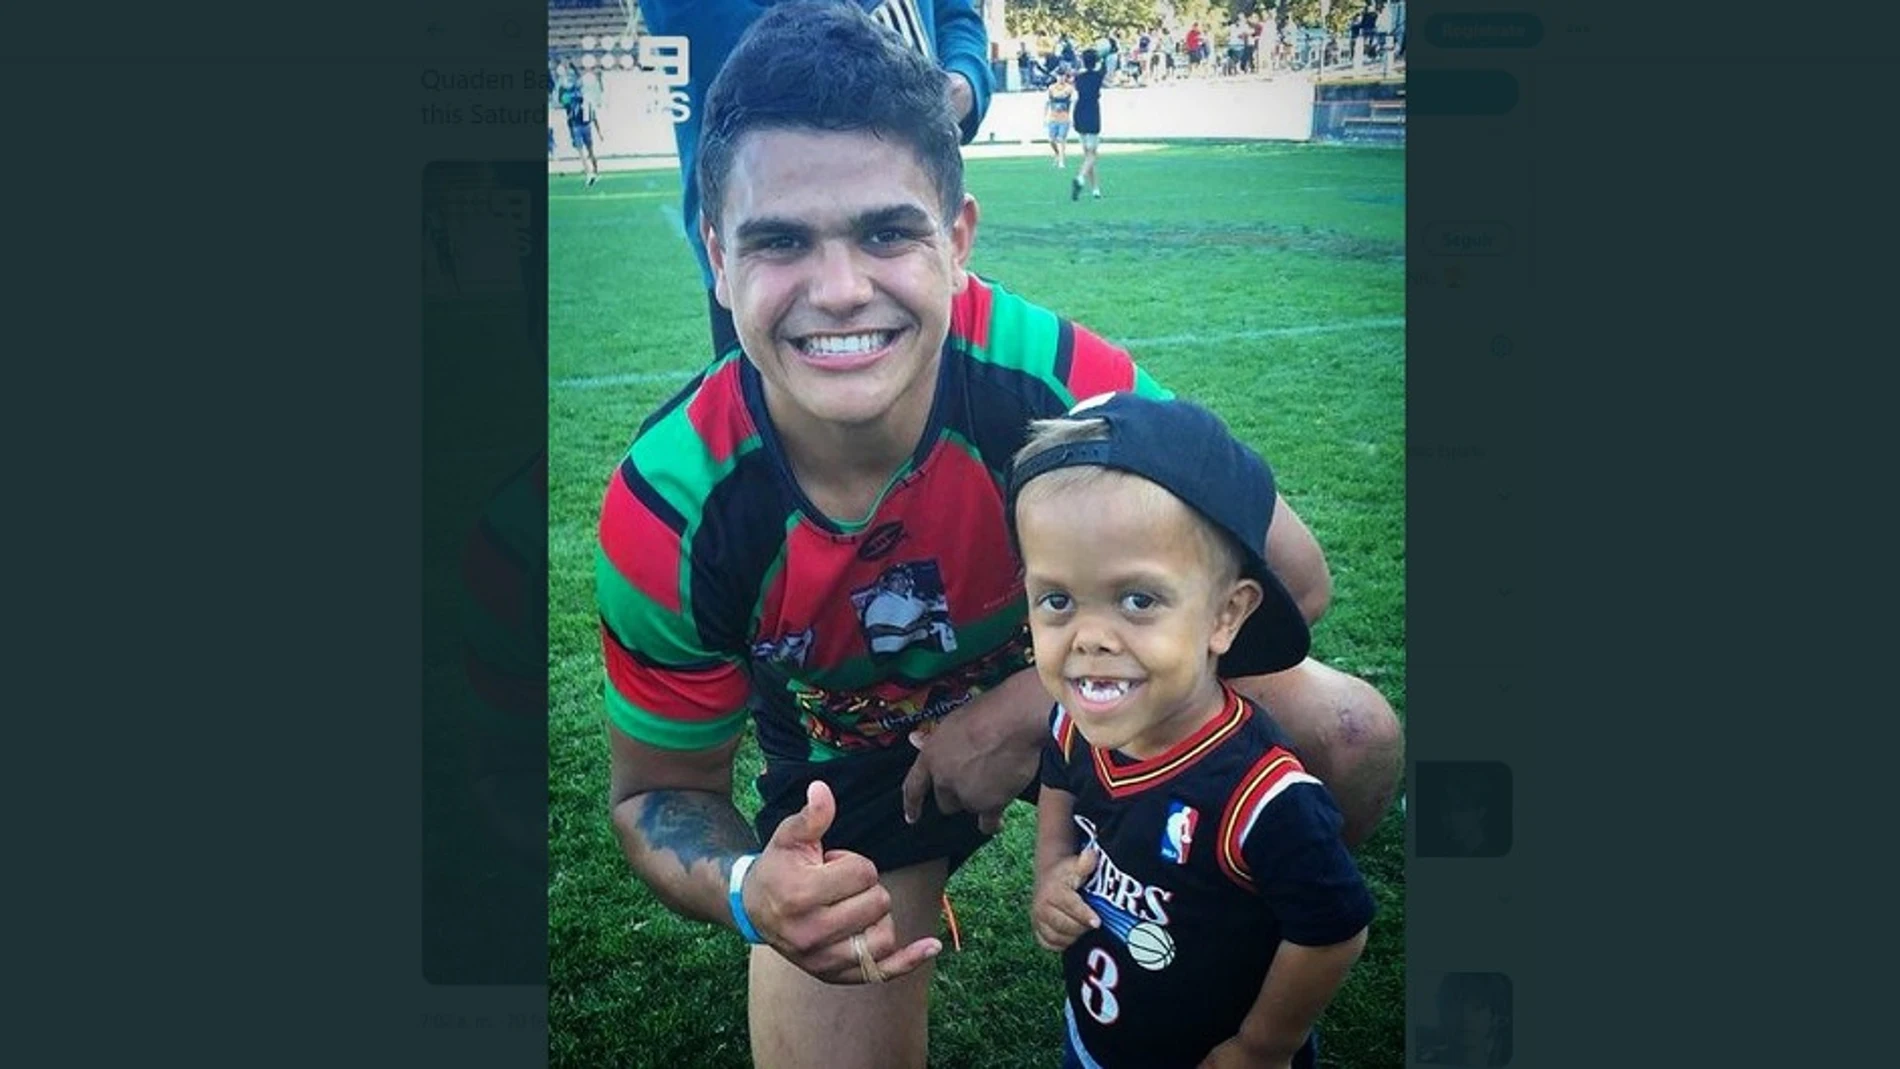 Imagen del niño australiano que sufre acoso con su equipo de rugby favorito